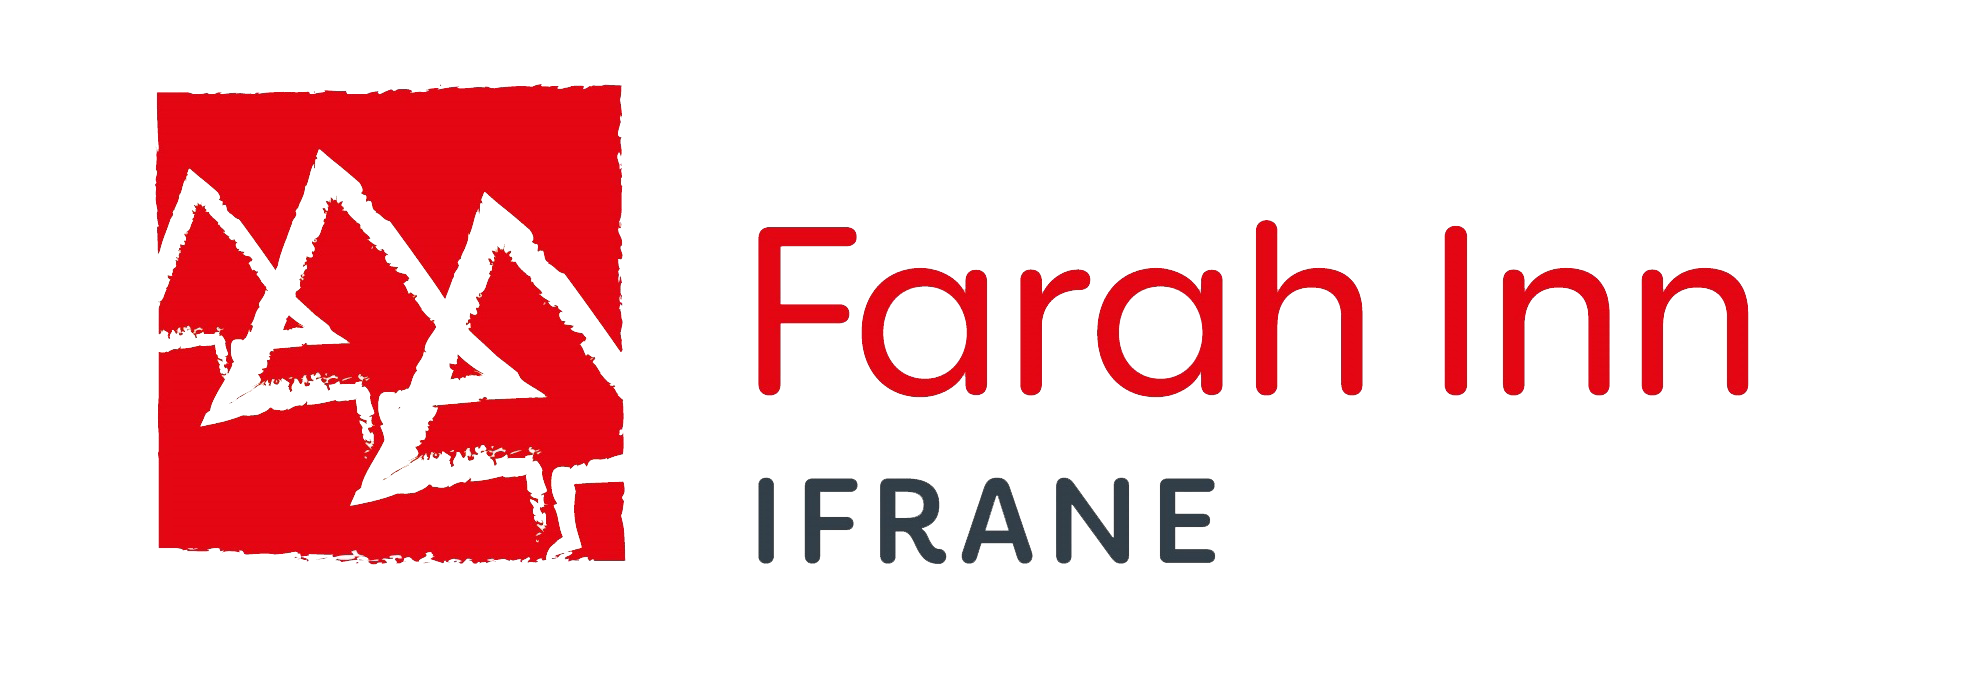 Bonzai_Farah Inn_logo_181105 (3)-011